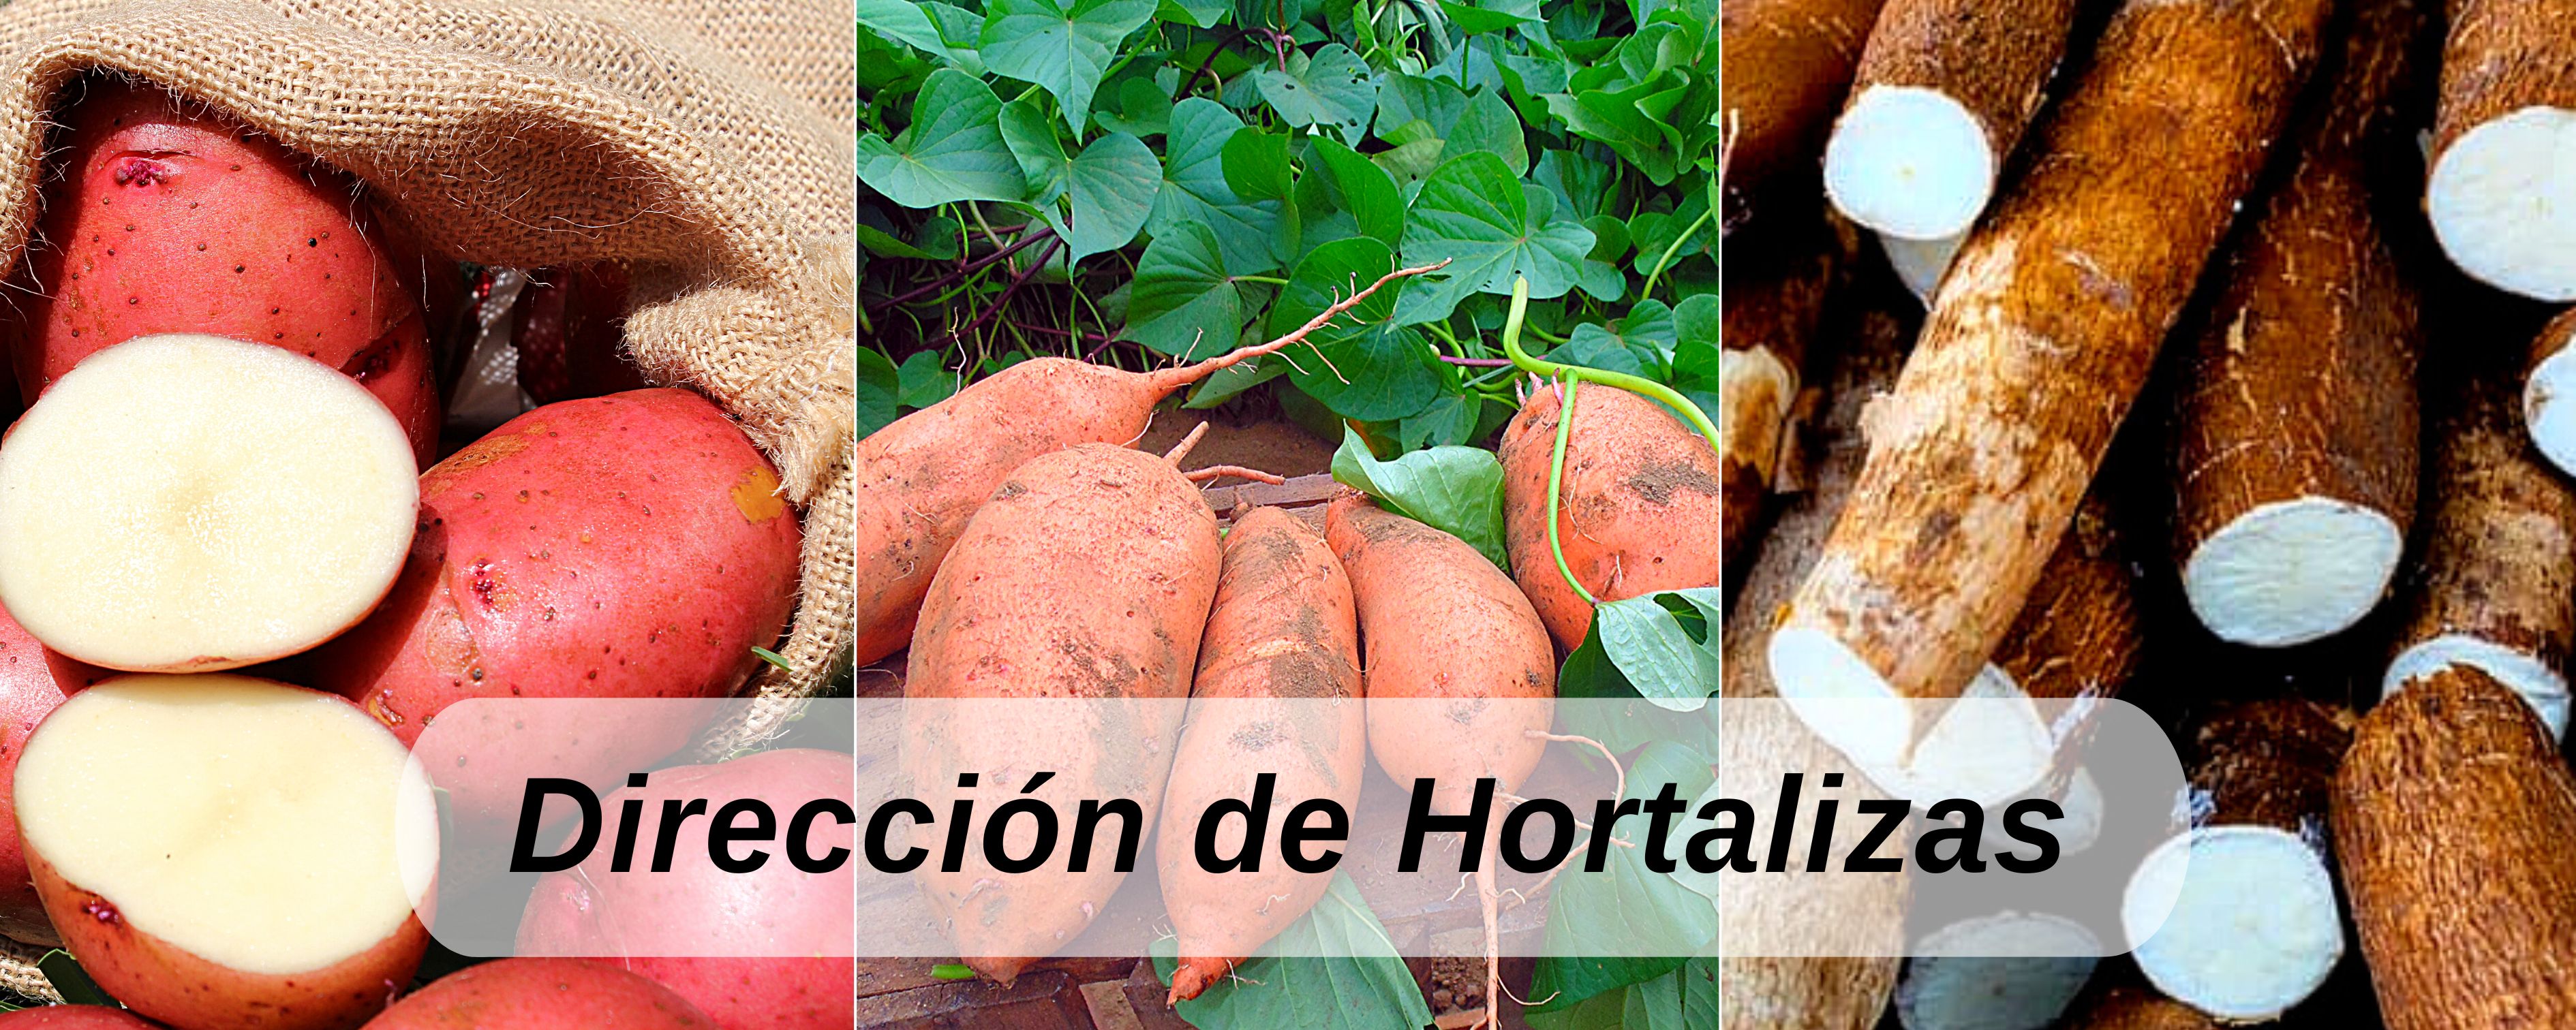 Hortalizas ICTA Guatemala